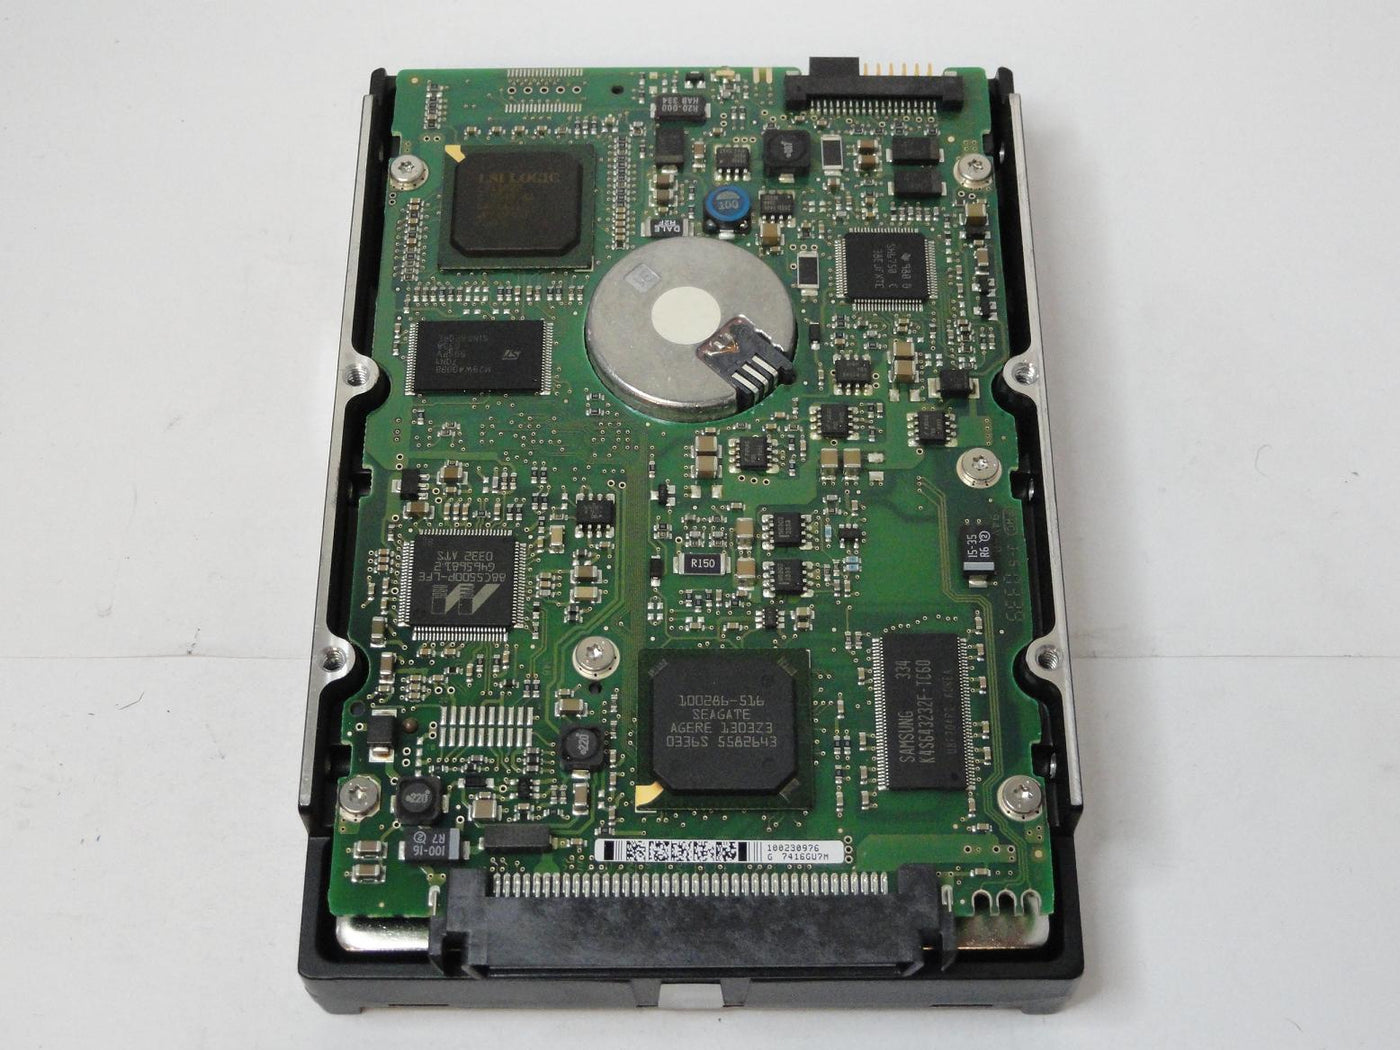 PR04261_9U9006-004_Seagate 36GB SCSI 80 Pin 15Krpm 3.5in HDD - Image4